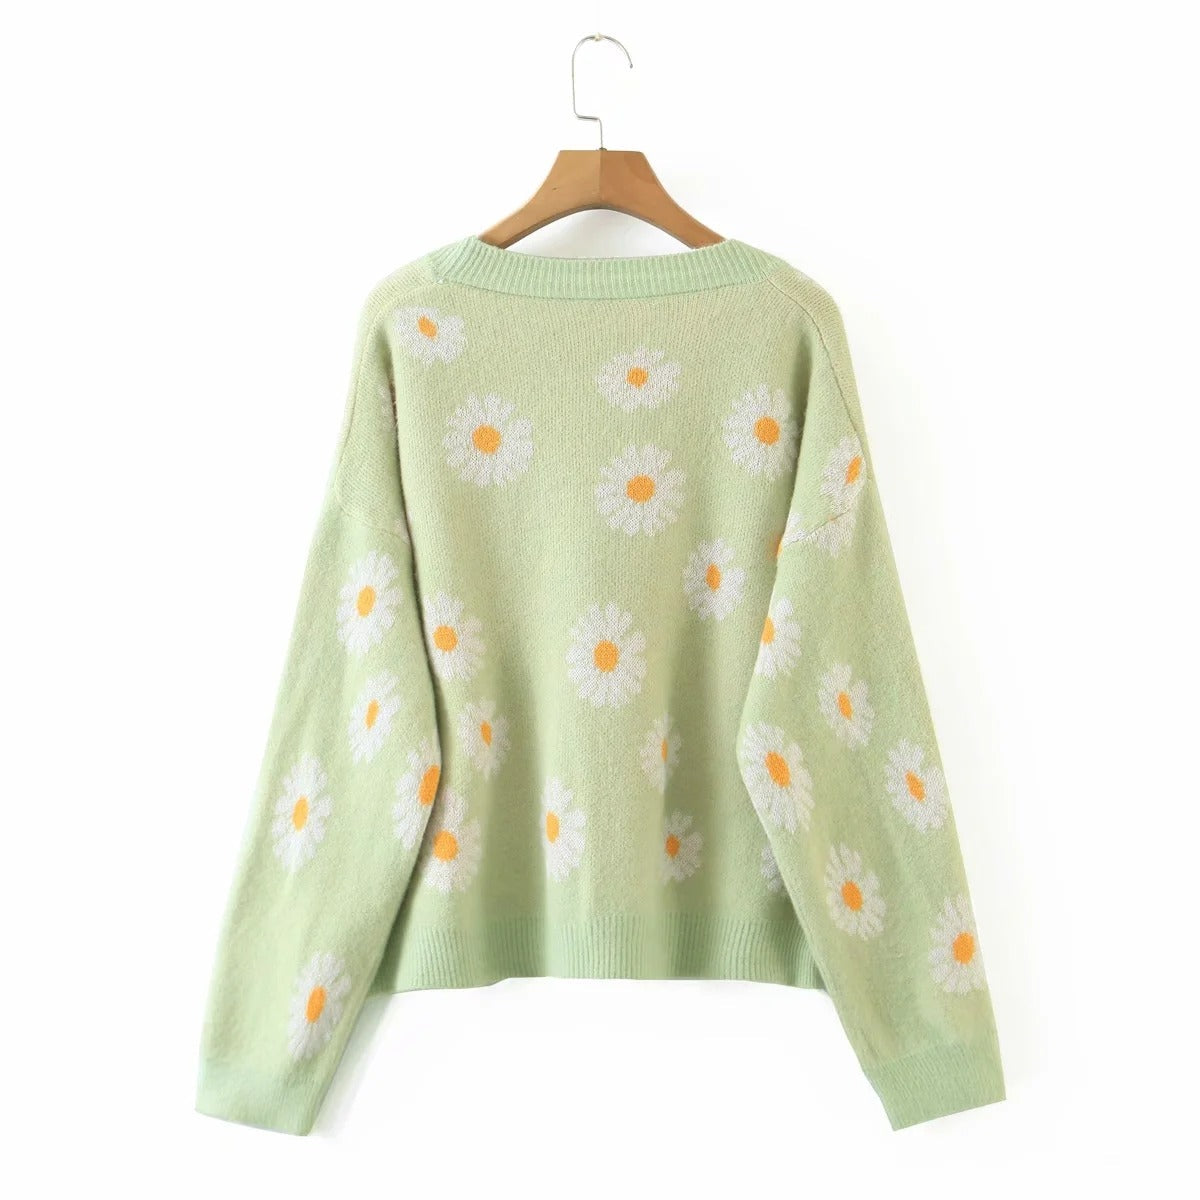 Sweet Sunflower Knitwear Cardigan Sweater